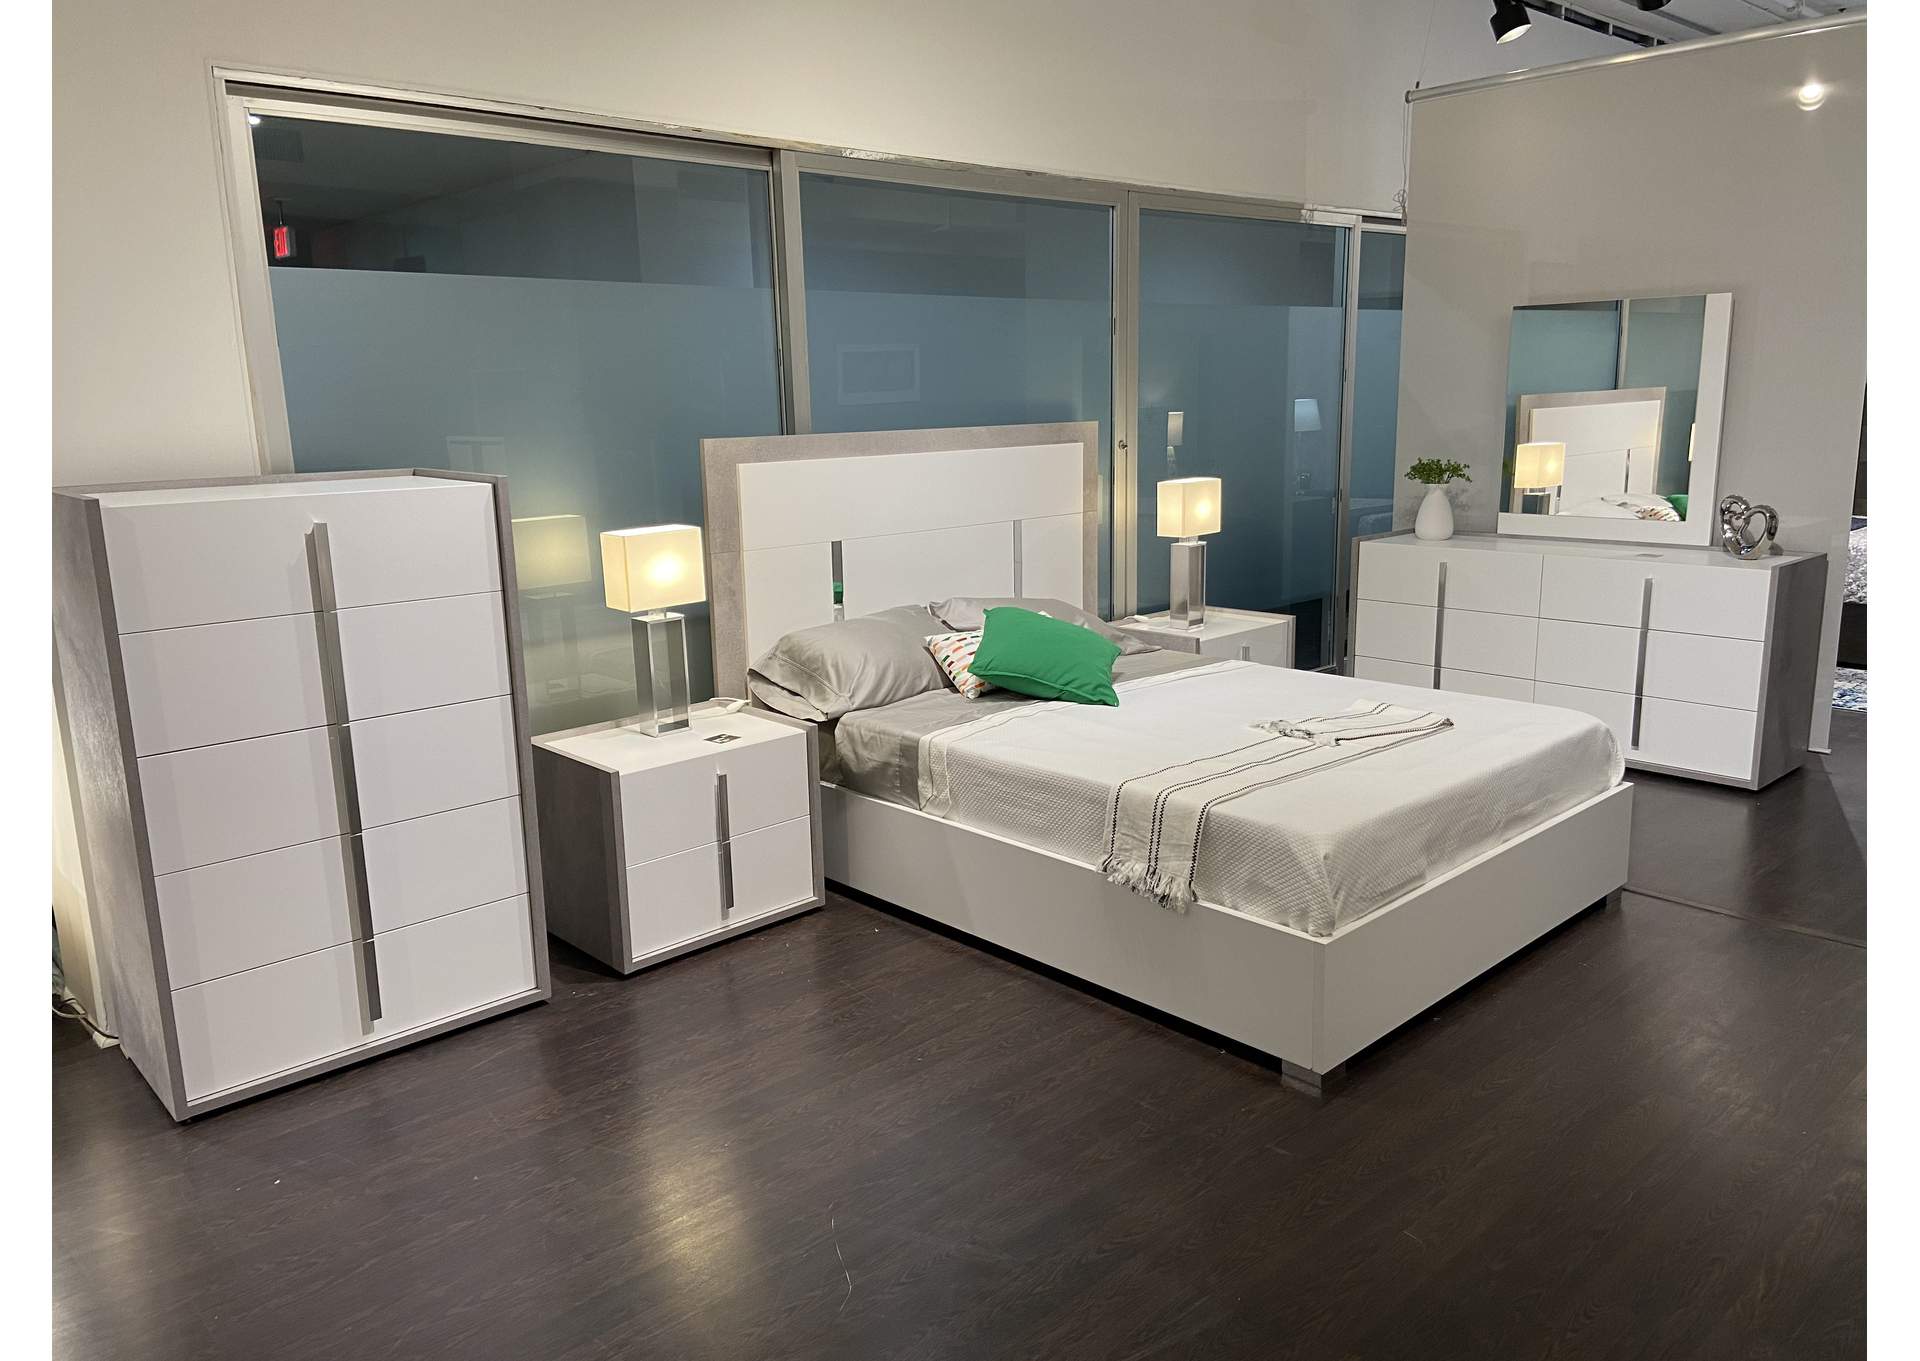 Ada Premium Dresser In Cemento - Bianco Opac,J&M Furniture